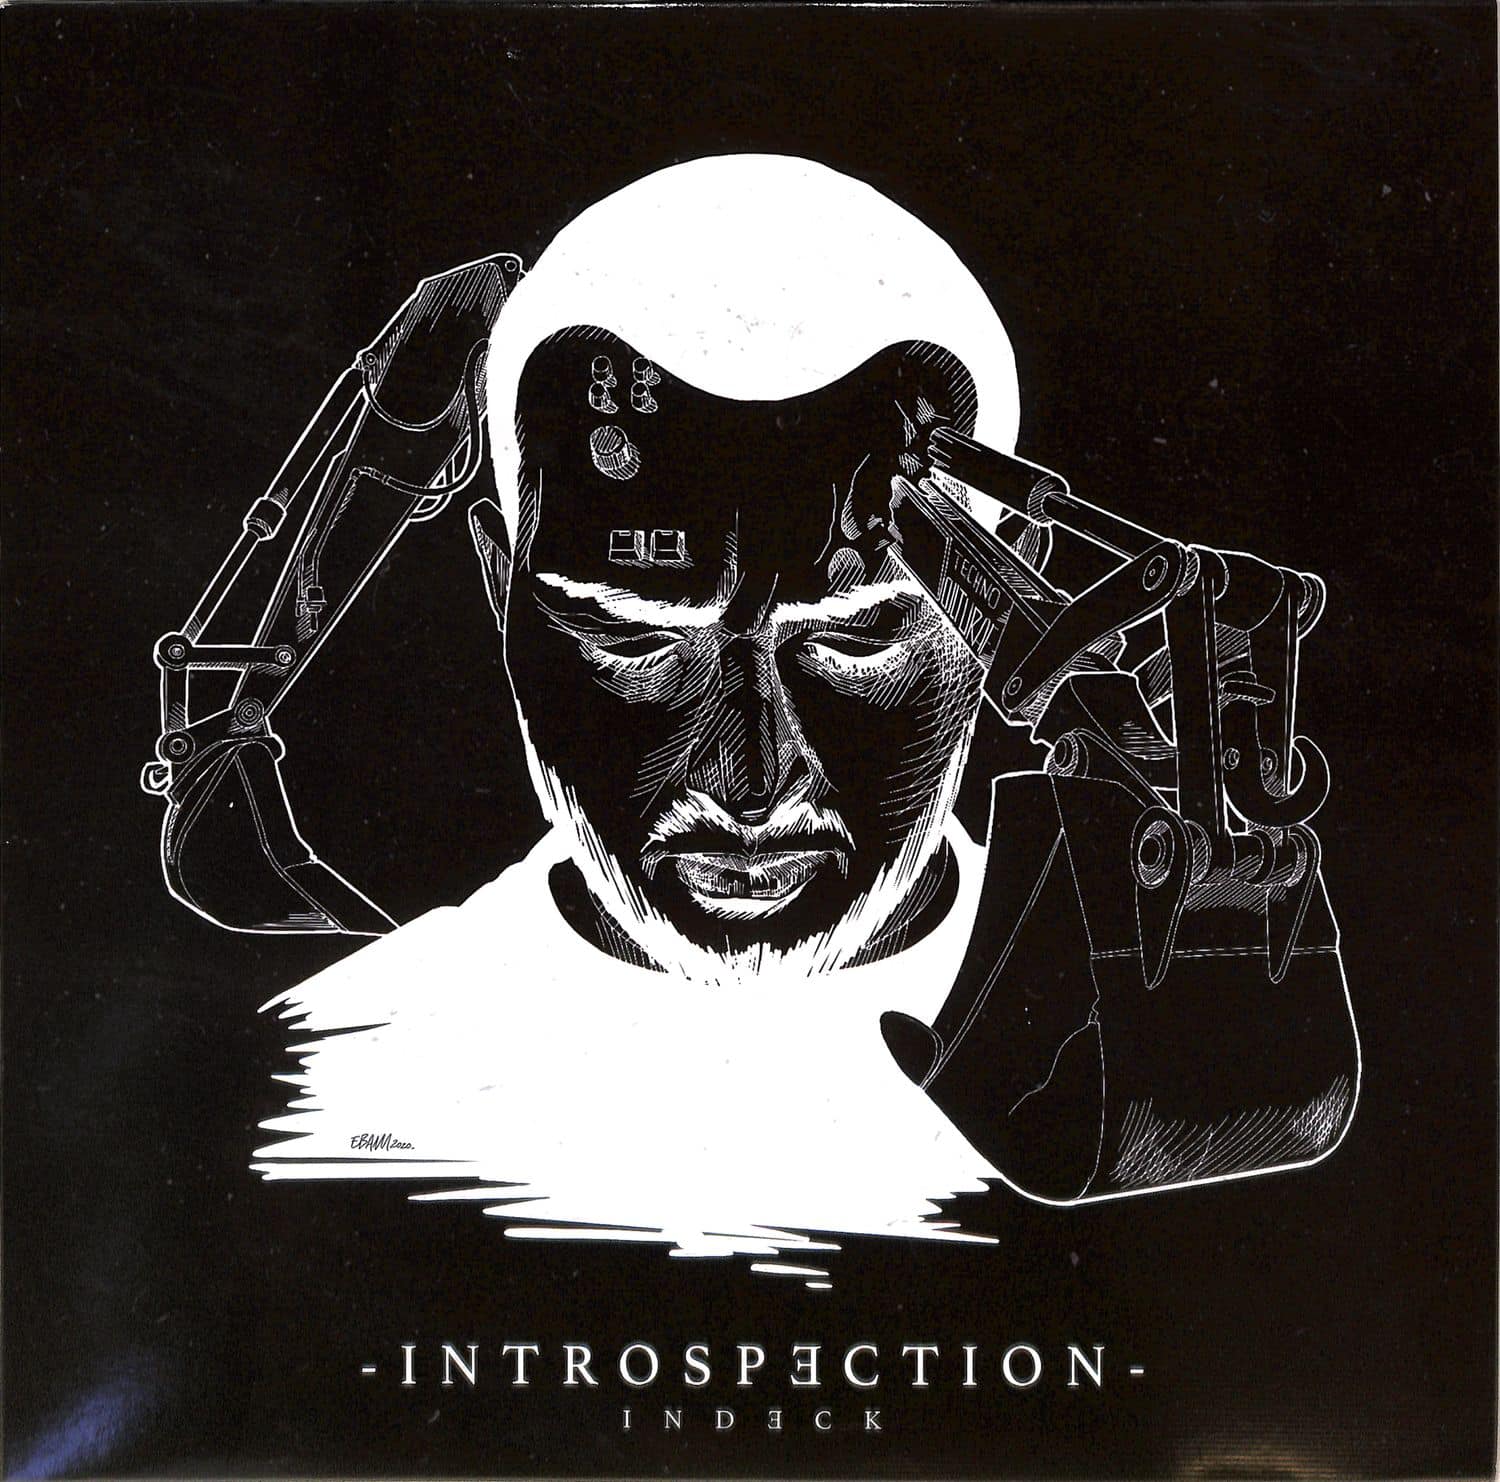 Indeck - INTROSPECTION 